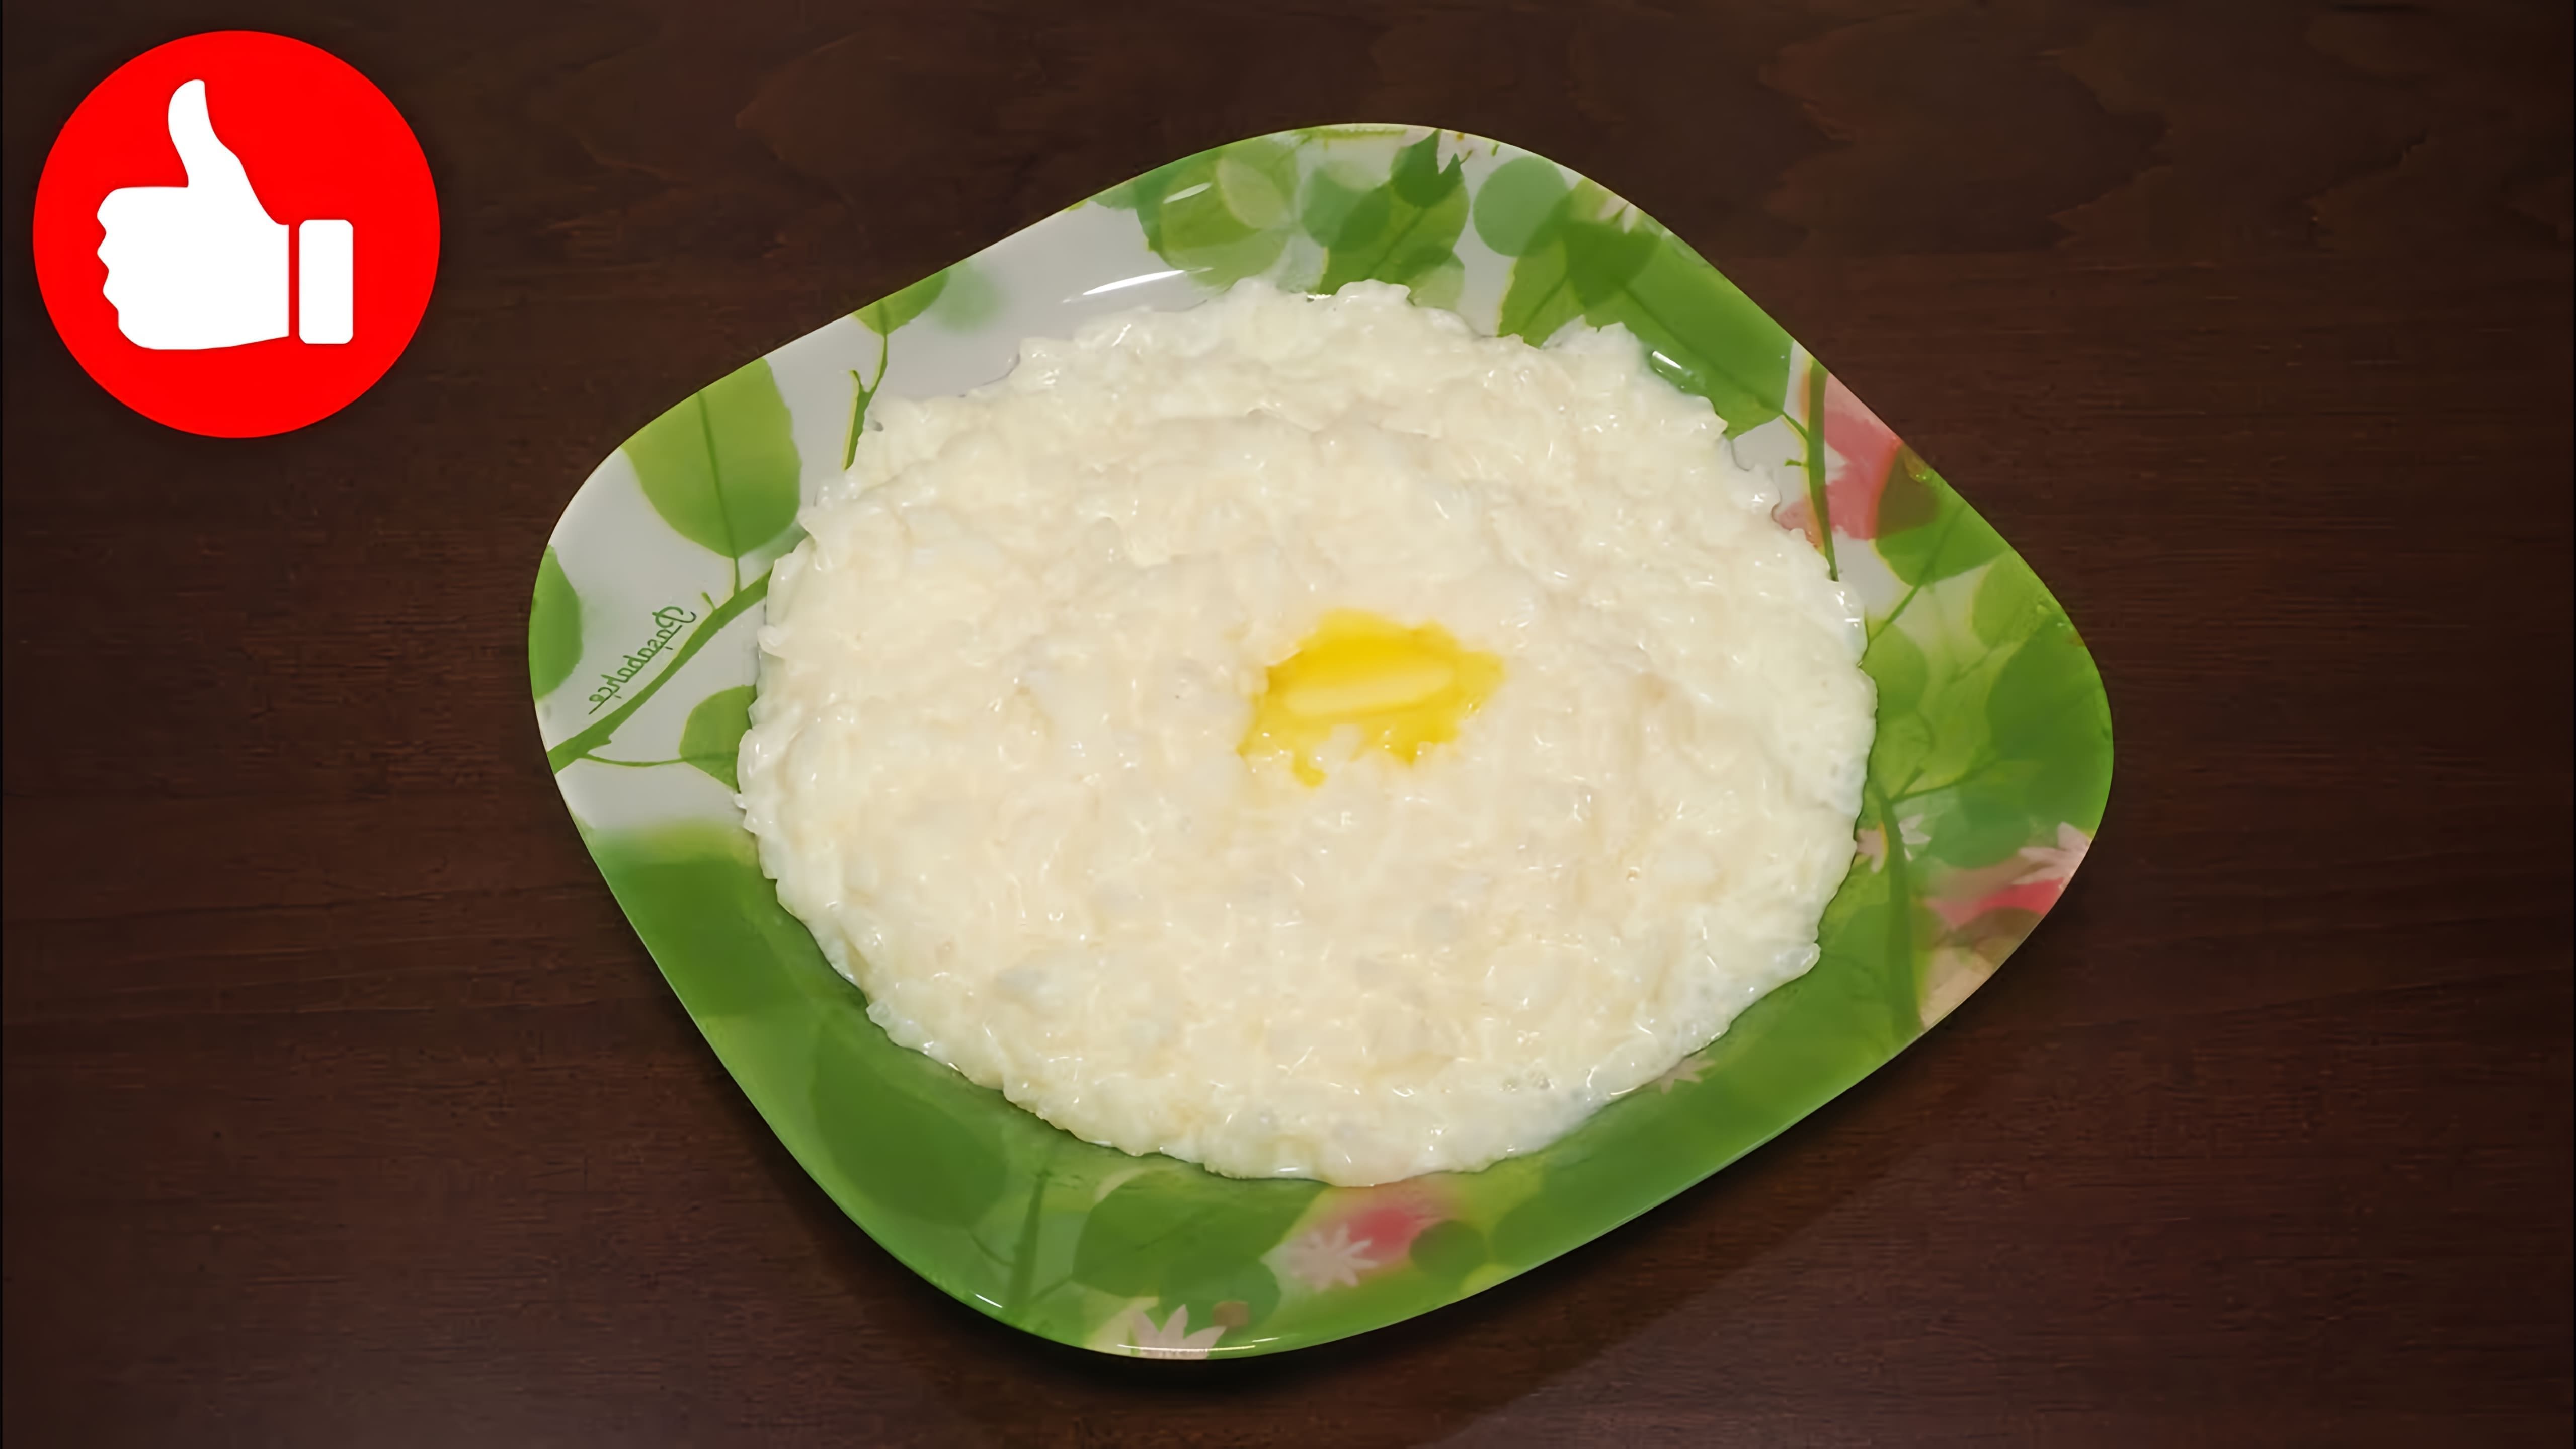 В этом видео демонстрируется рецепт молочной рисовой каши в мультиварке